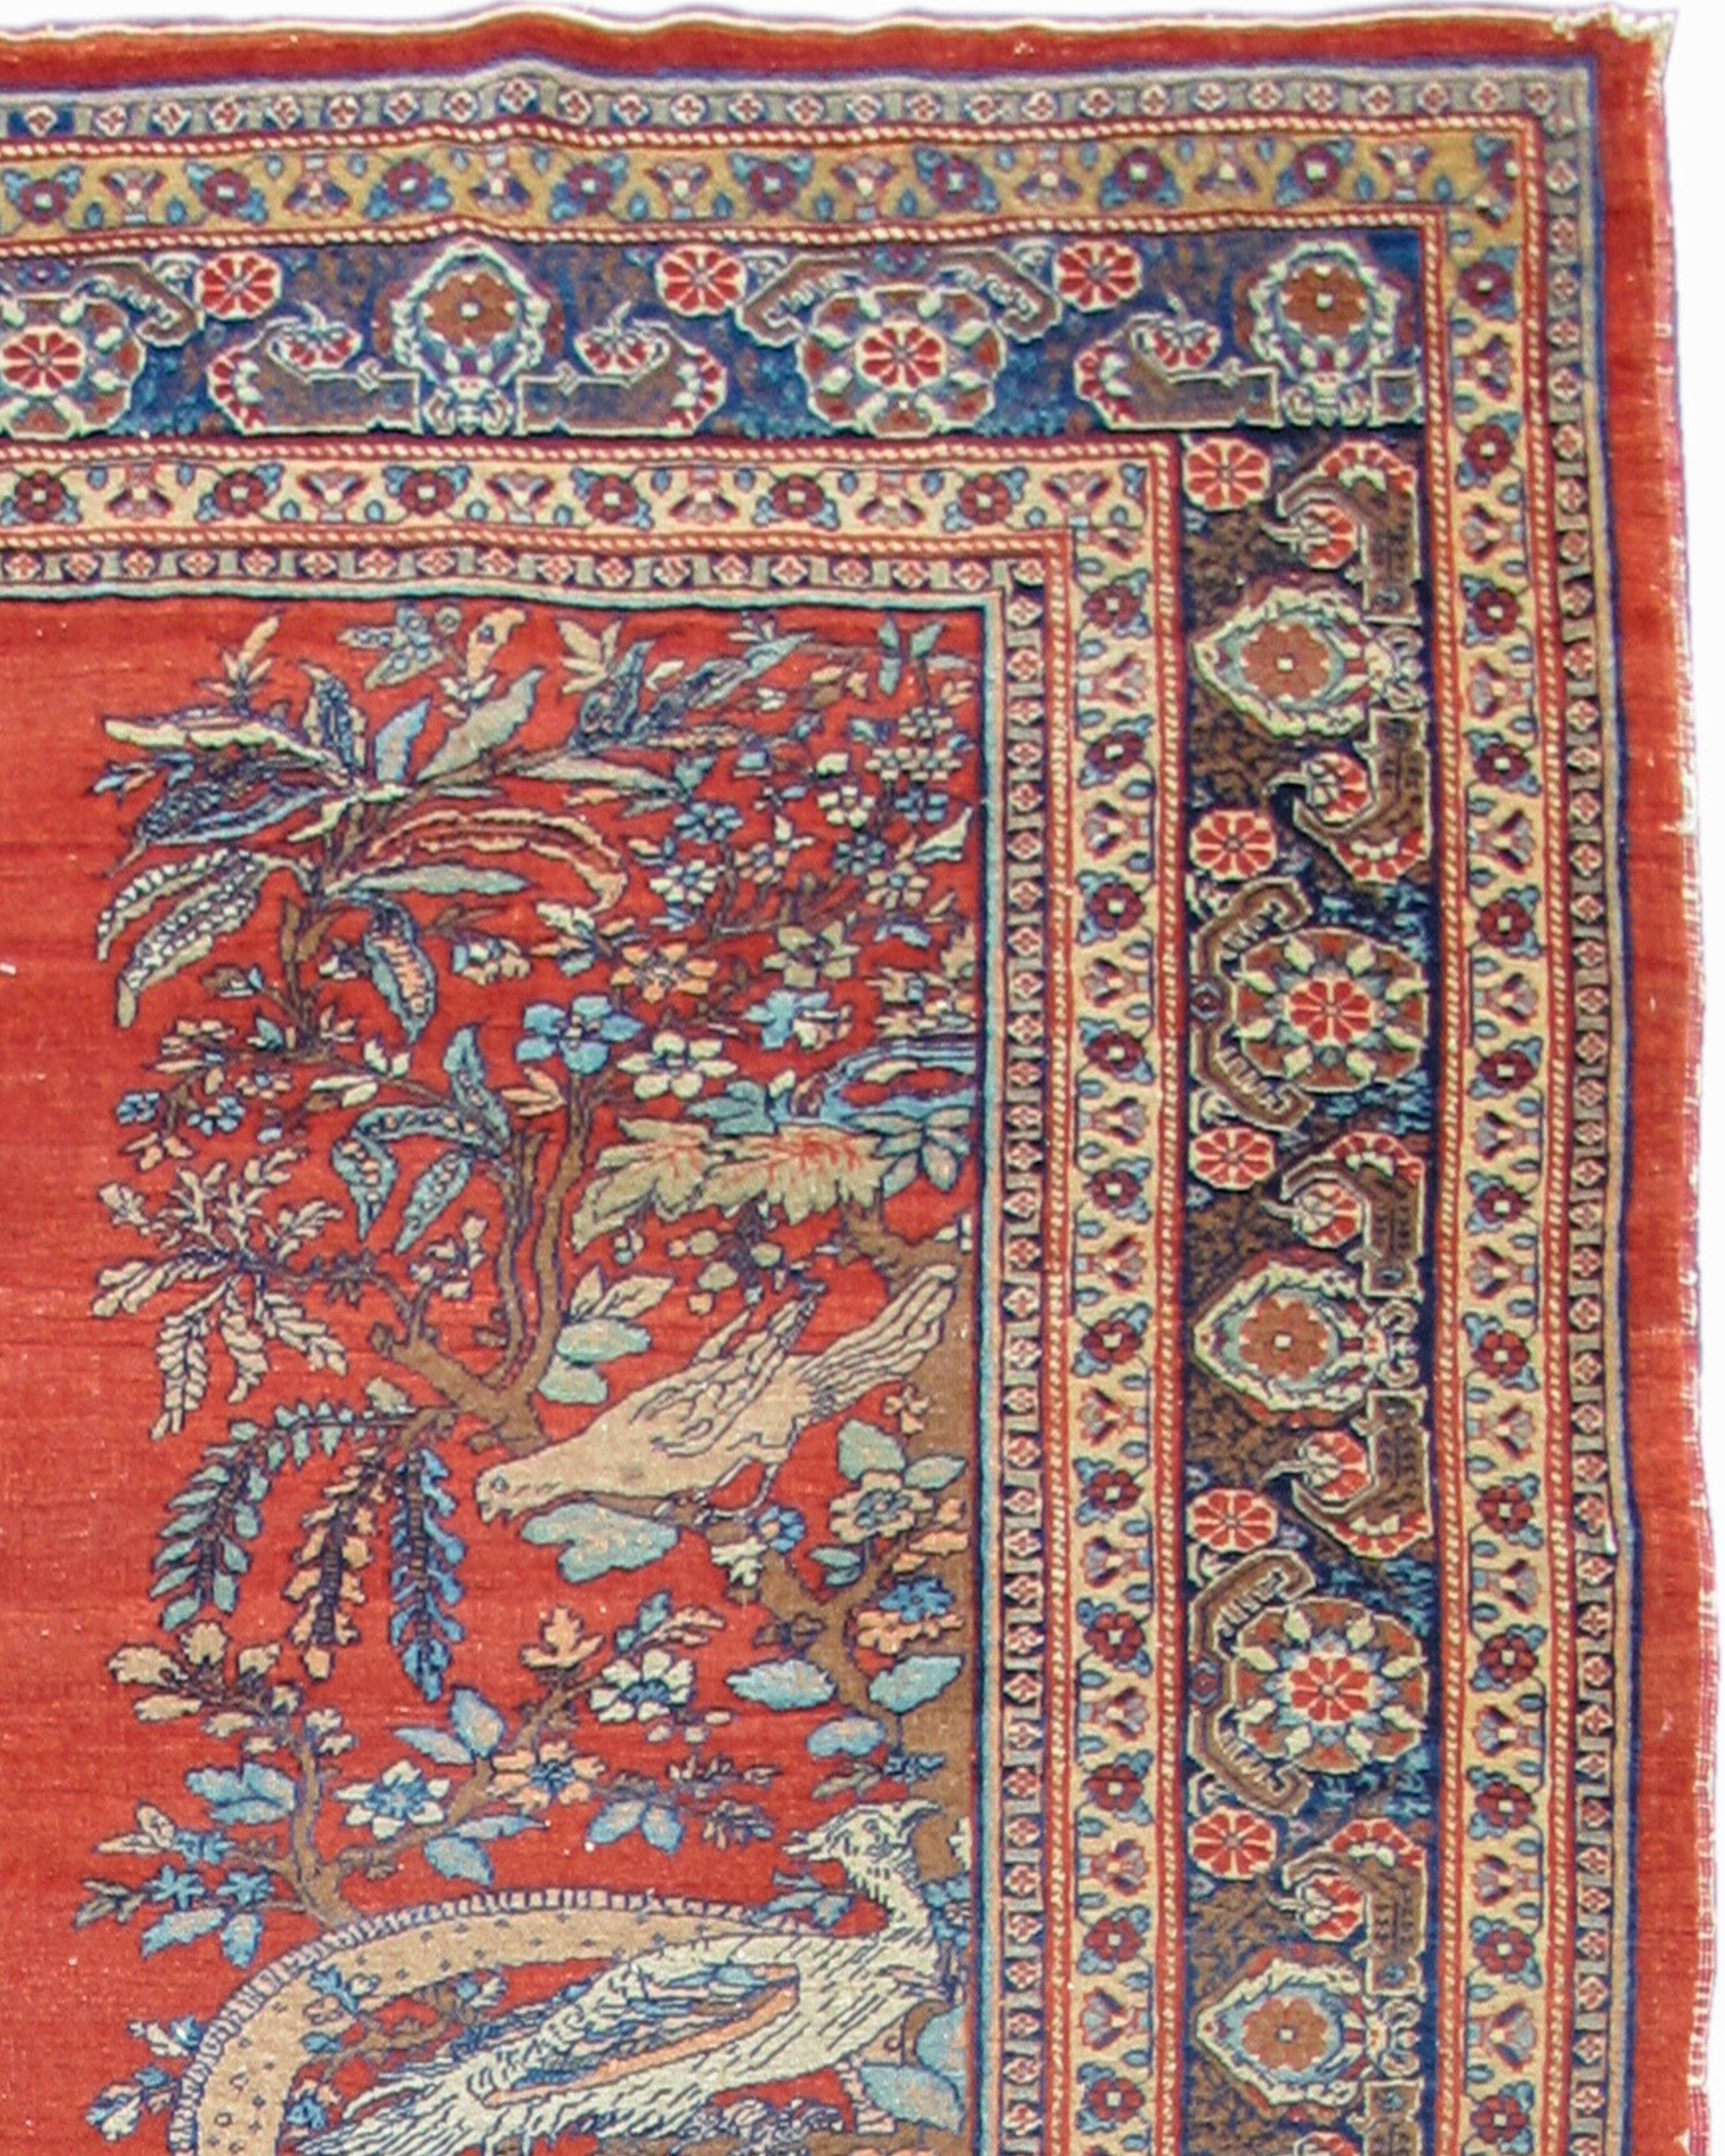 Ancien tapis persan pictural de Tabriz, 19e siècle

Cette peinture de Tabriz datant du XIXe siècle représente des hommes chevauchant des chameaux, un couple de dragons, des singes et des poulets, entre autres animaux. 

Informations supplémentaires